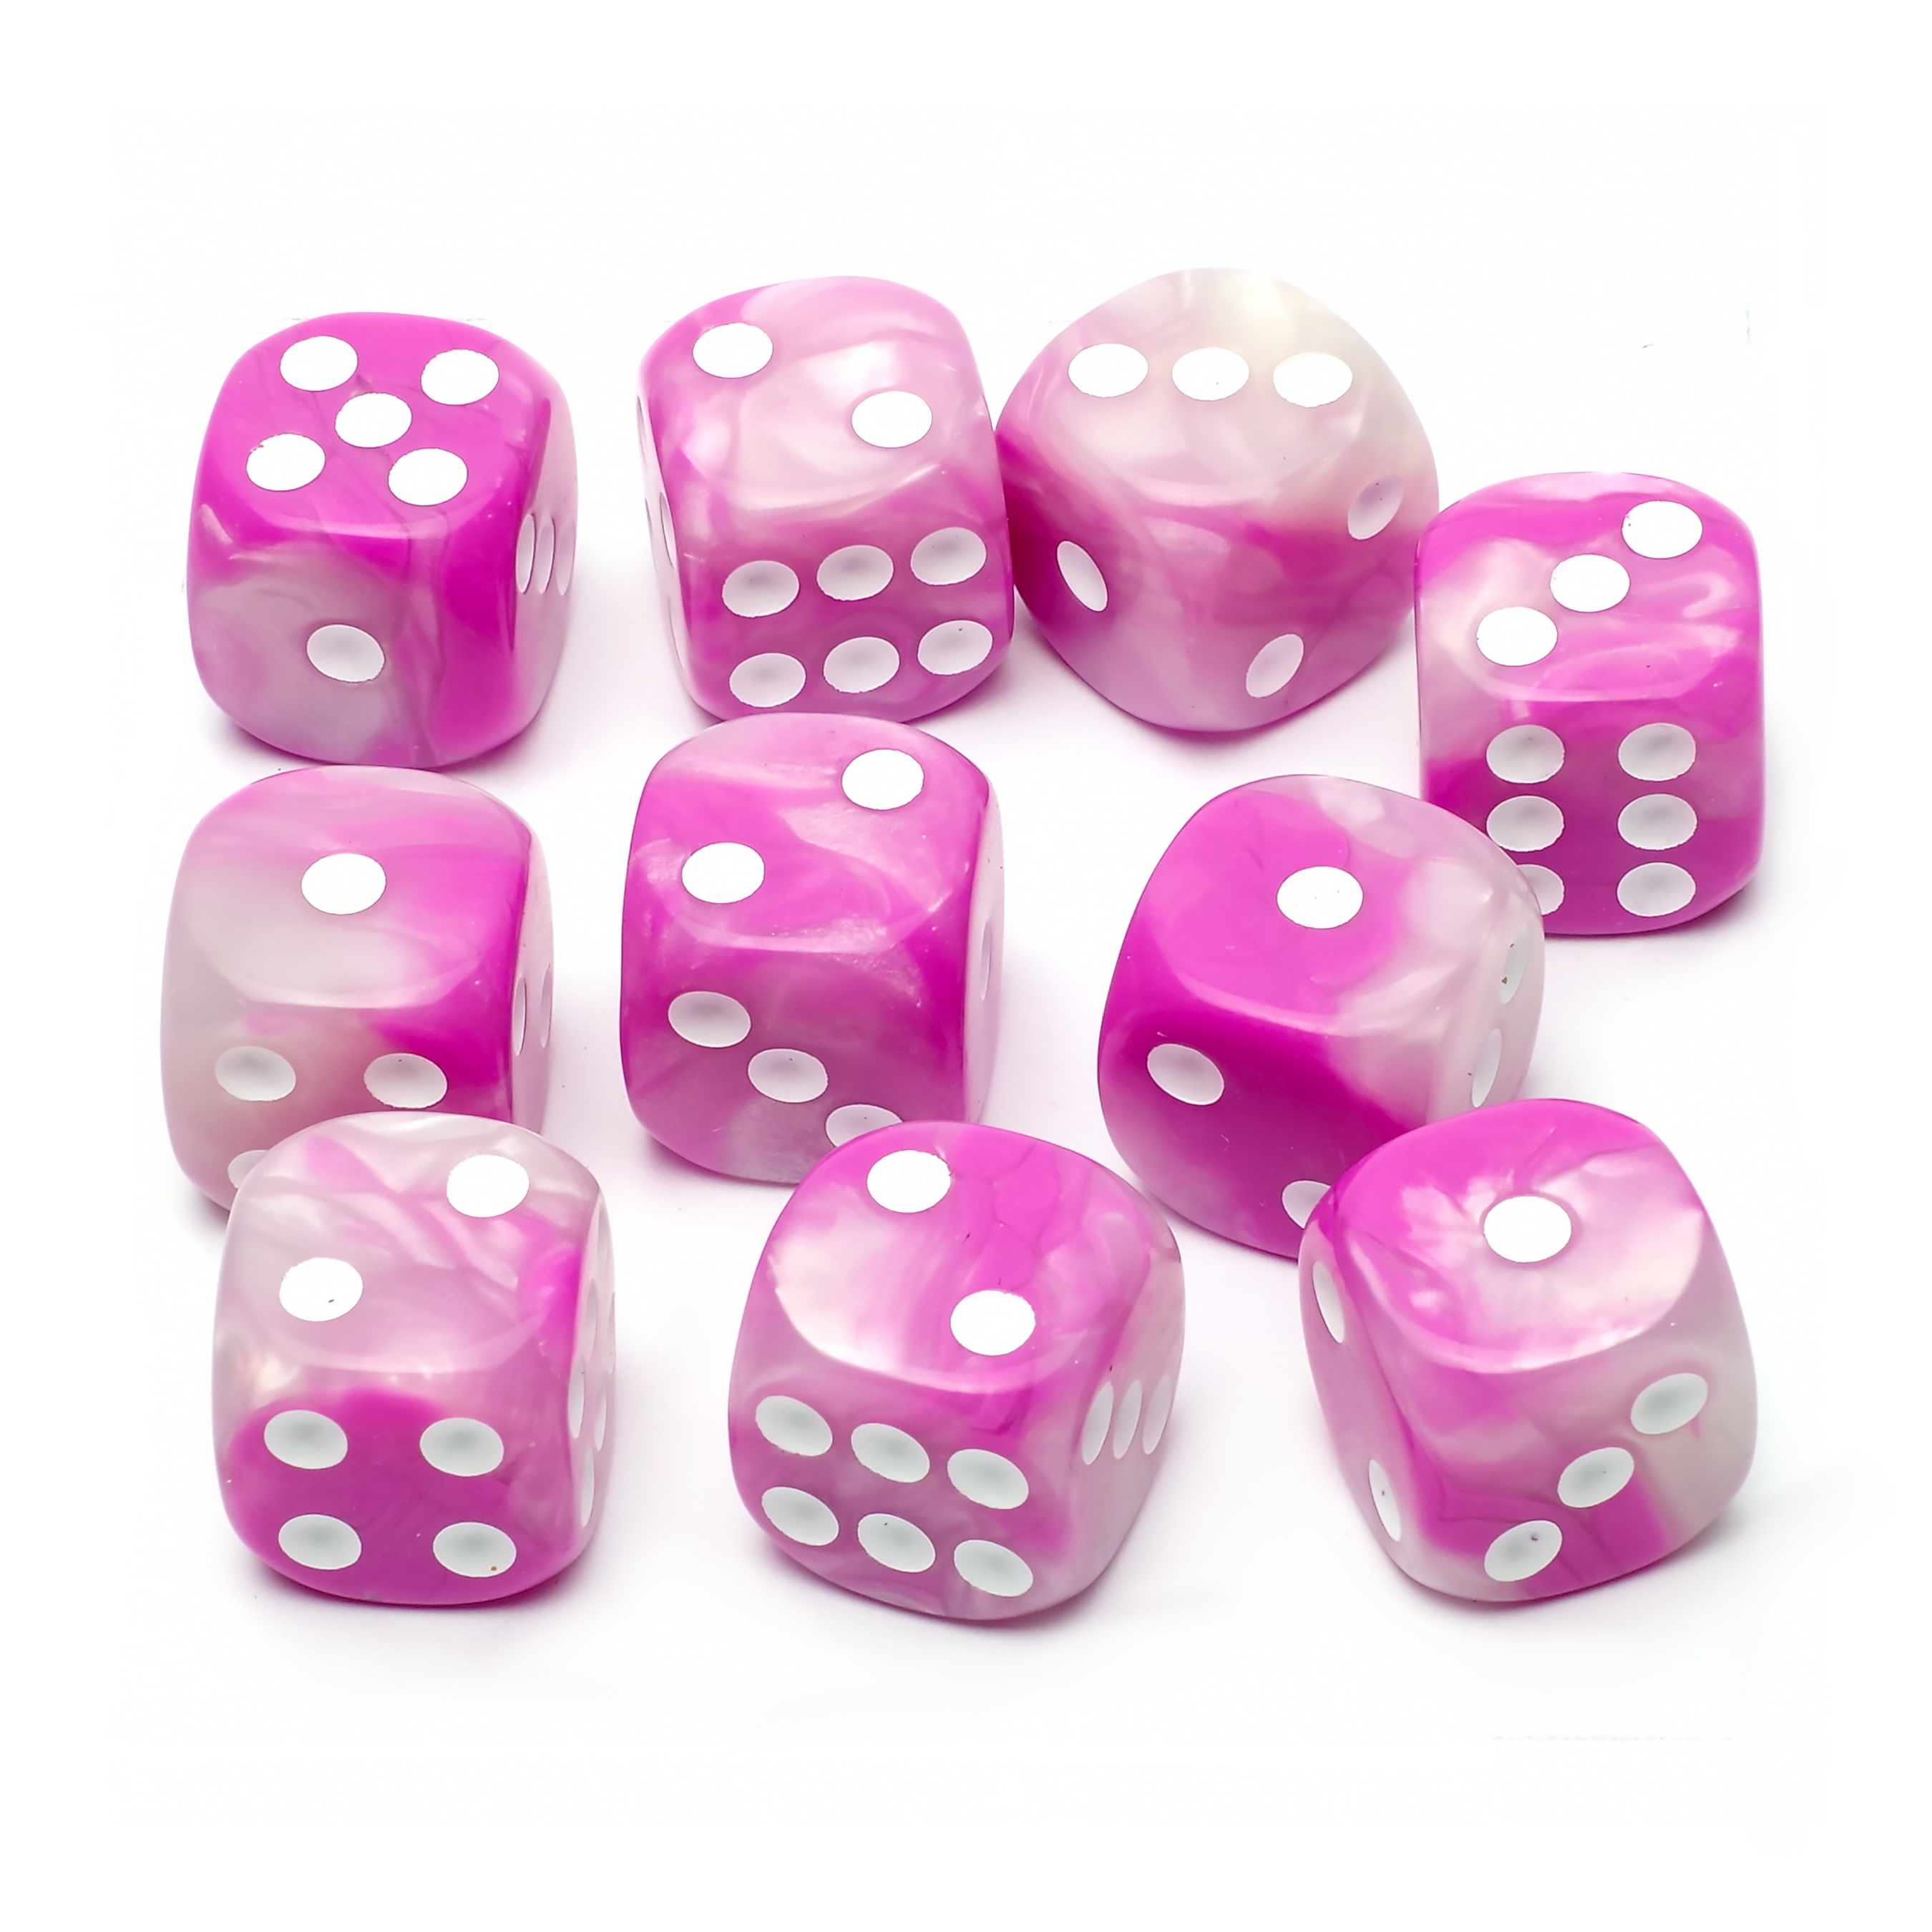 Набор кубиков STUFF-PRO d6, 10 шт, 16мм, бело-розовый набор игральных кубиков pandora box studio простые d6 16мм 12 шт бело